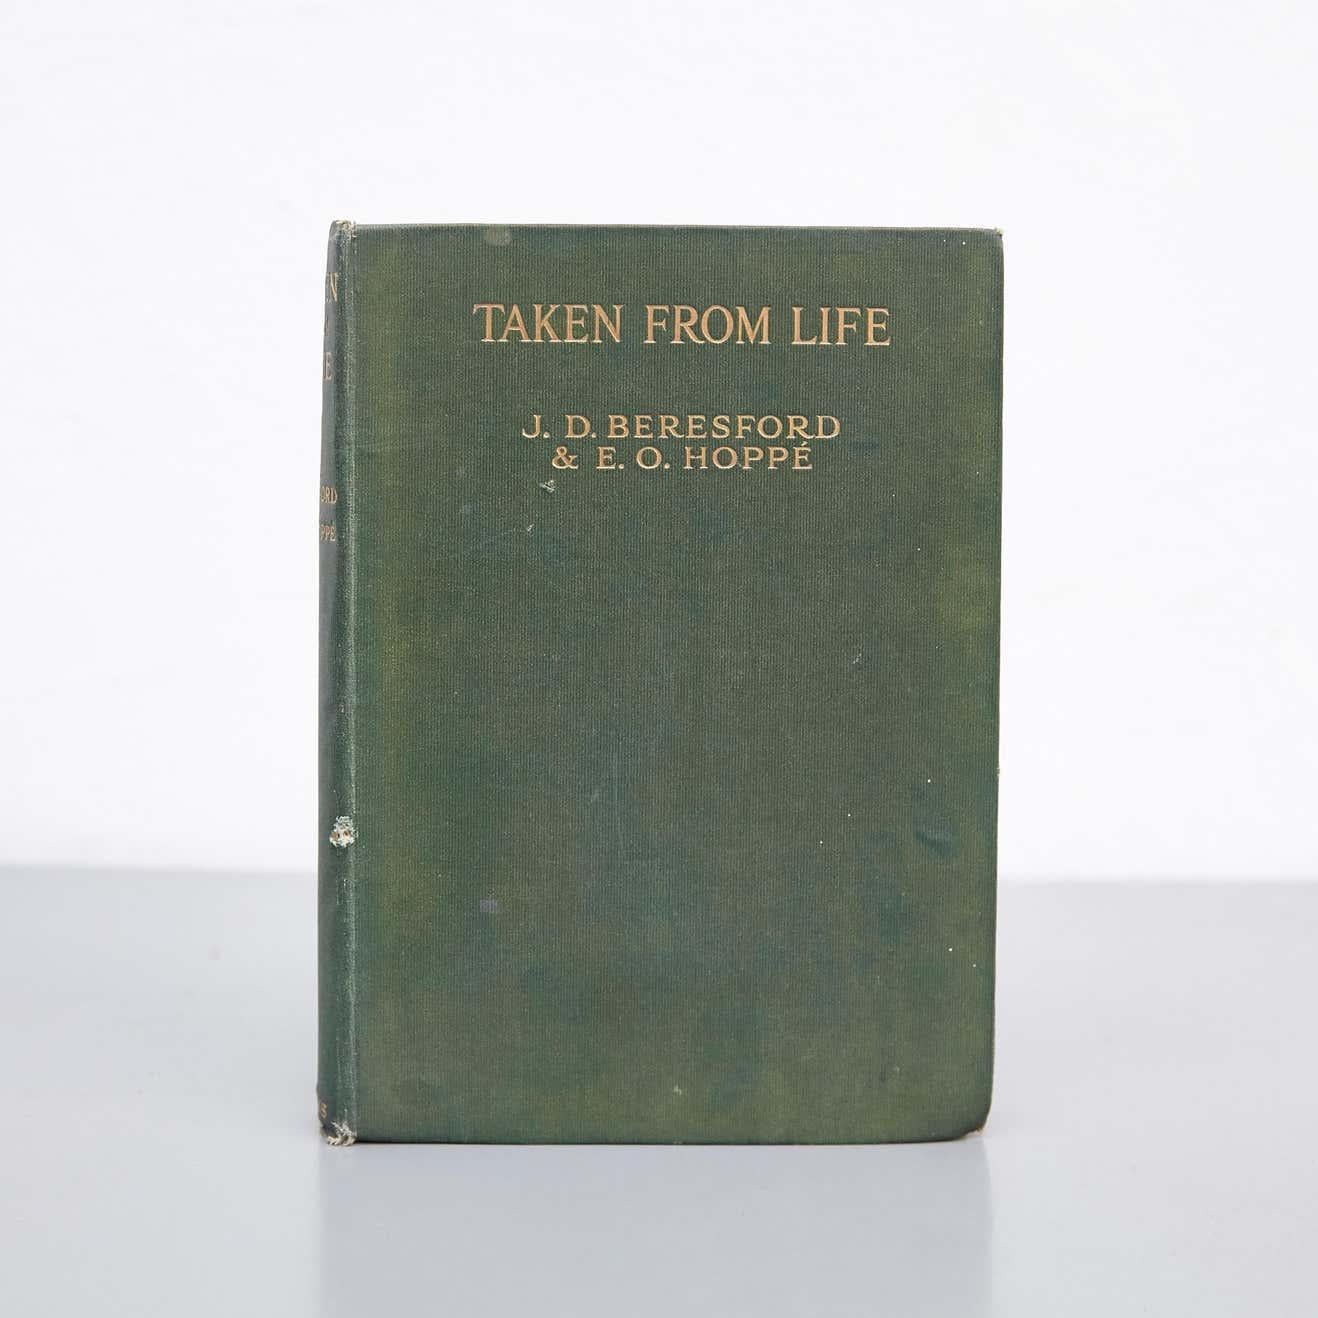 Buch veröffentlicht von W. COLLINS SONS & CO. LTD., London, Glasgow, Melbourne, Auckland 1922.

E. Die Fotografien von O. (Emil Otto) Hoppé erwecken die sieben Biografien des englischen Schriftstellers J. D. (John Davys) Beresford zum Leben. Dies